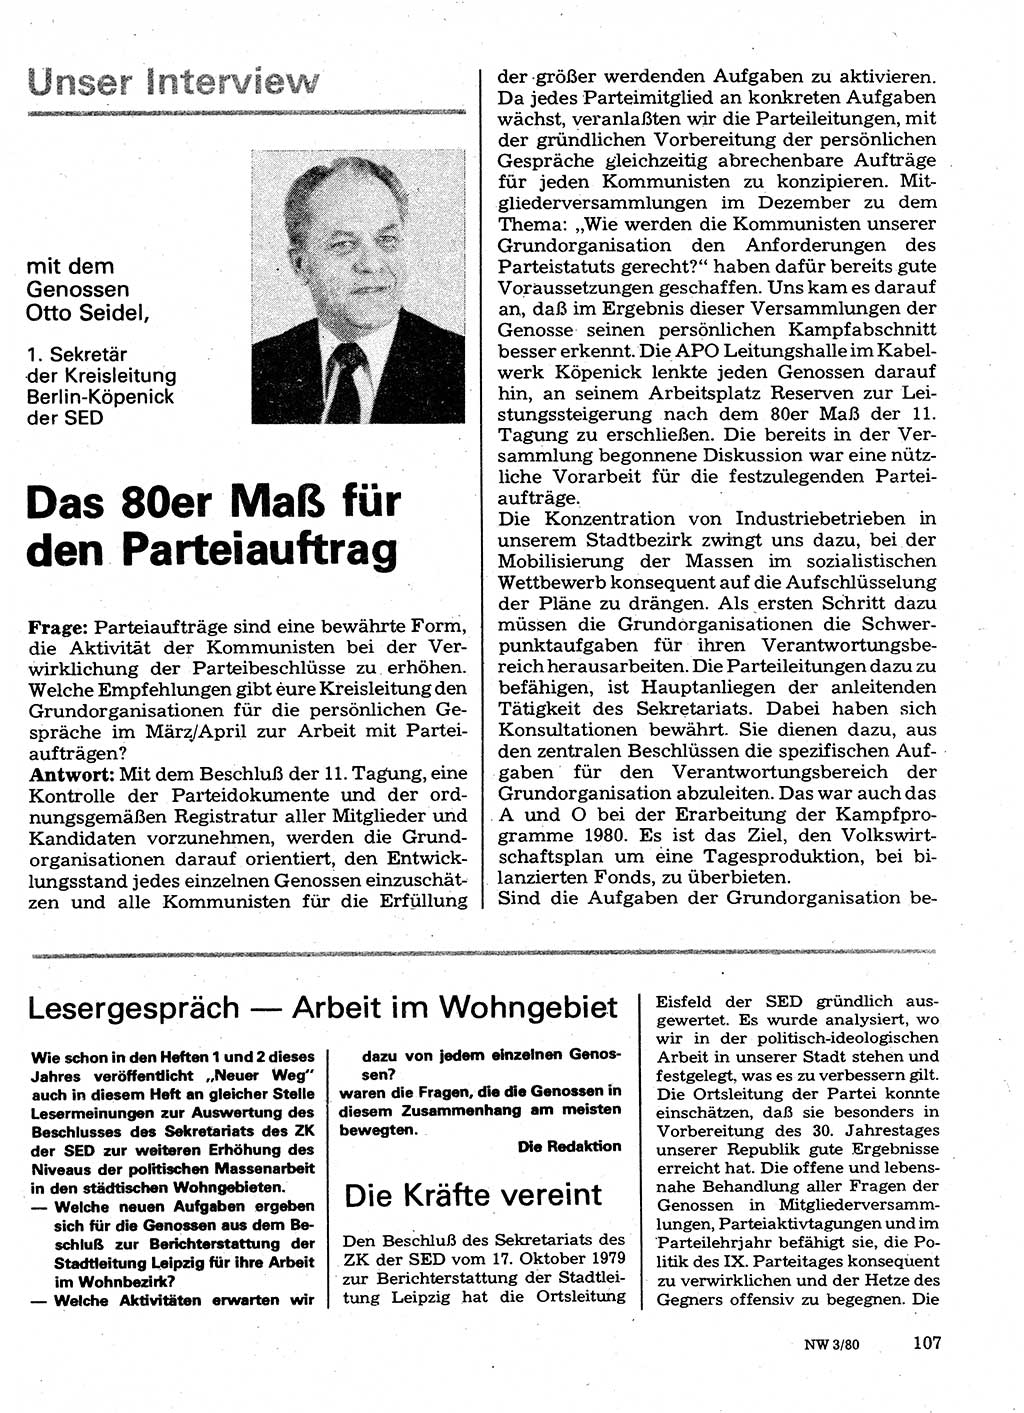 Neuer Weg (NW), Organ des Zentralkomitees (ZK) der SED (Sozialistische Einheitspartei Deutschlands) für Fragen des Parteilebens, 35. Jahrgang [Deutsche Demokratische Republik (DDR)] 1980, Seite 107 (NW ZK SED DDR 1980, S. 107)